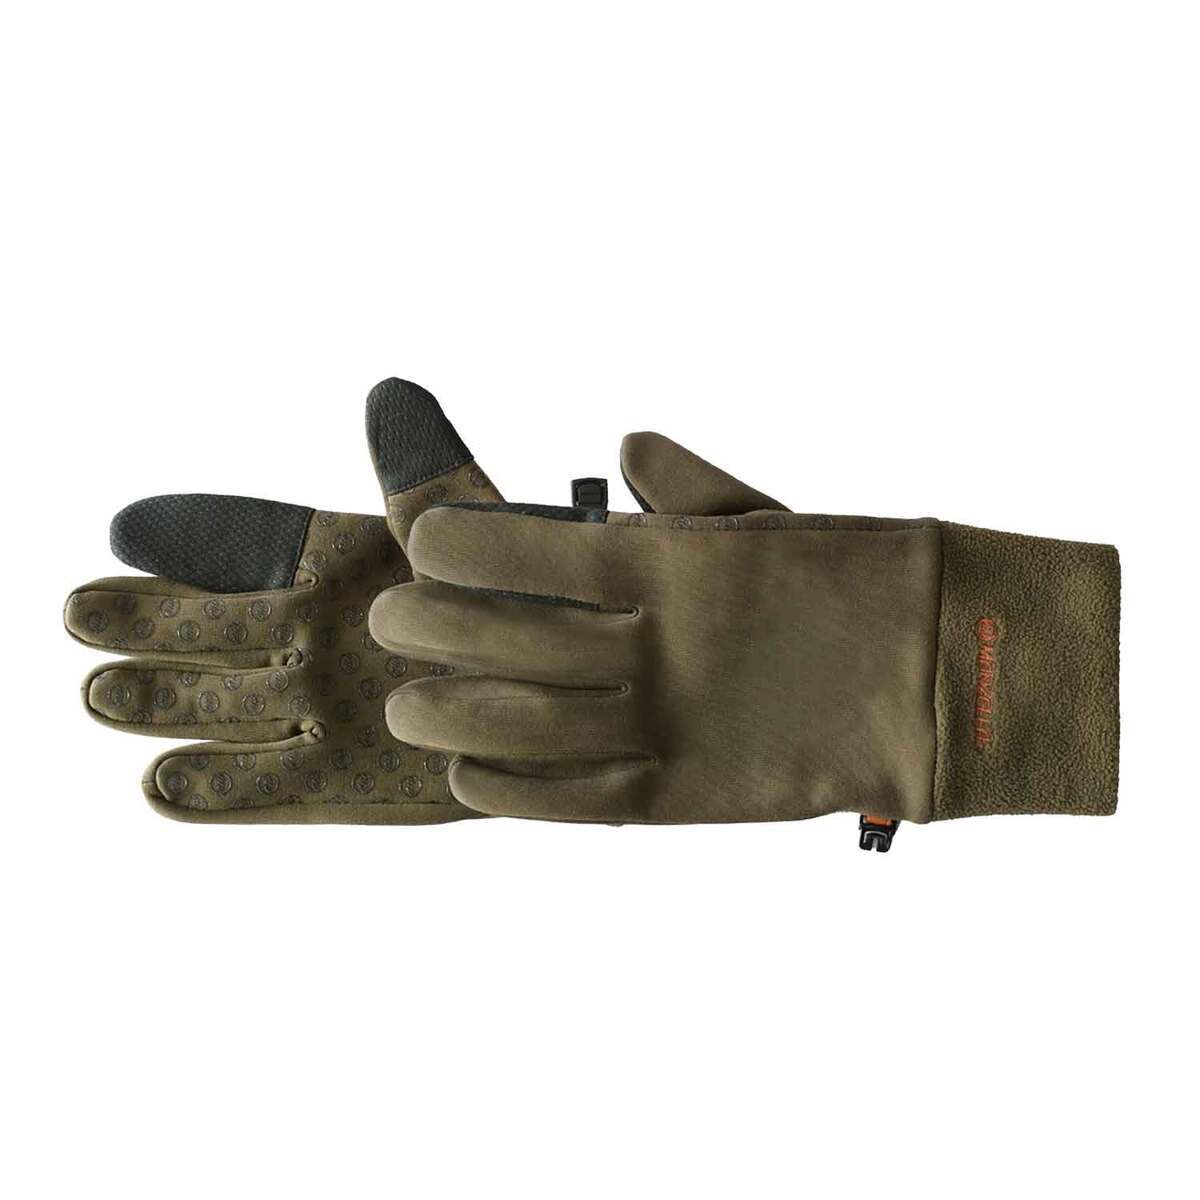 https://www.sportsmans.com/medias/manzella-mens-touchtip-hunting-gloves-ml-1694168-1.jpg?context=bWFzdGVyfGltYWdlc3w1Mzg2NHxpbWFnZS9qcGVnfGgxZS9oZTIvMTA5Mzk2OTU1MzAwMTQvMTY5NDE2OC0xX2Jhc2UtY29udmVyc2lvbkZvcm1hdF8xMjAwLWNvbnZlcnNpb25Gb3JtYXR8YmIxMDNiNmFiYTU4ZDRlN2MwZTEwZjM3ZmJhNTk5ZDM2MTljMDM1NDRjYjFmYTY5ODA0MDVkY2Q1ZThlZTI4Mg